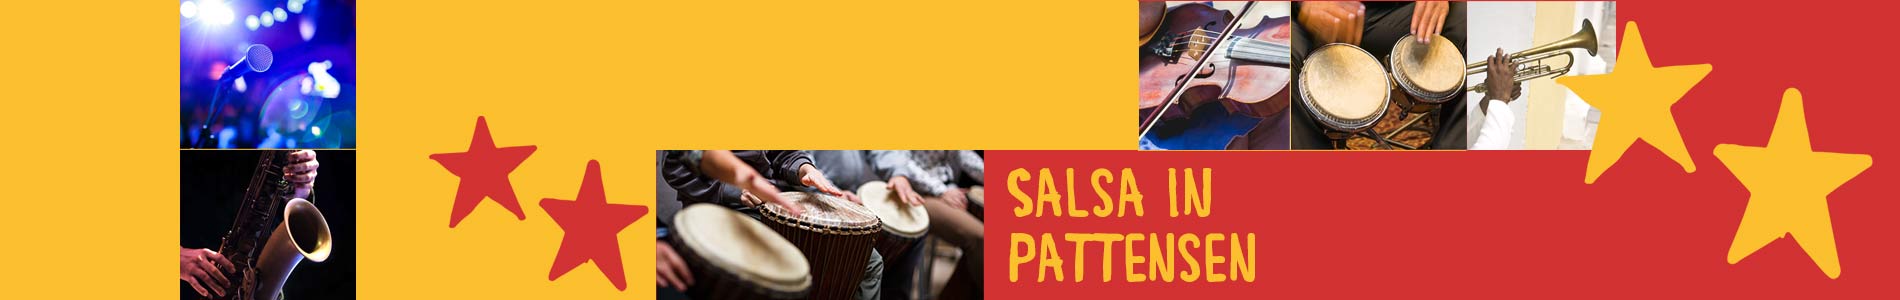 Salsa in Pattensen – Salsa lernen und tanzen, Tanzkurse, Partys, Veranstaltungen